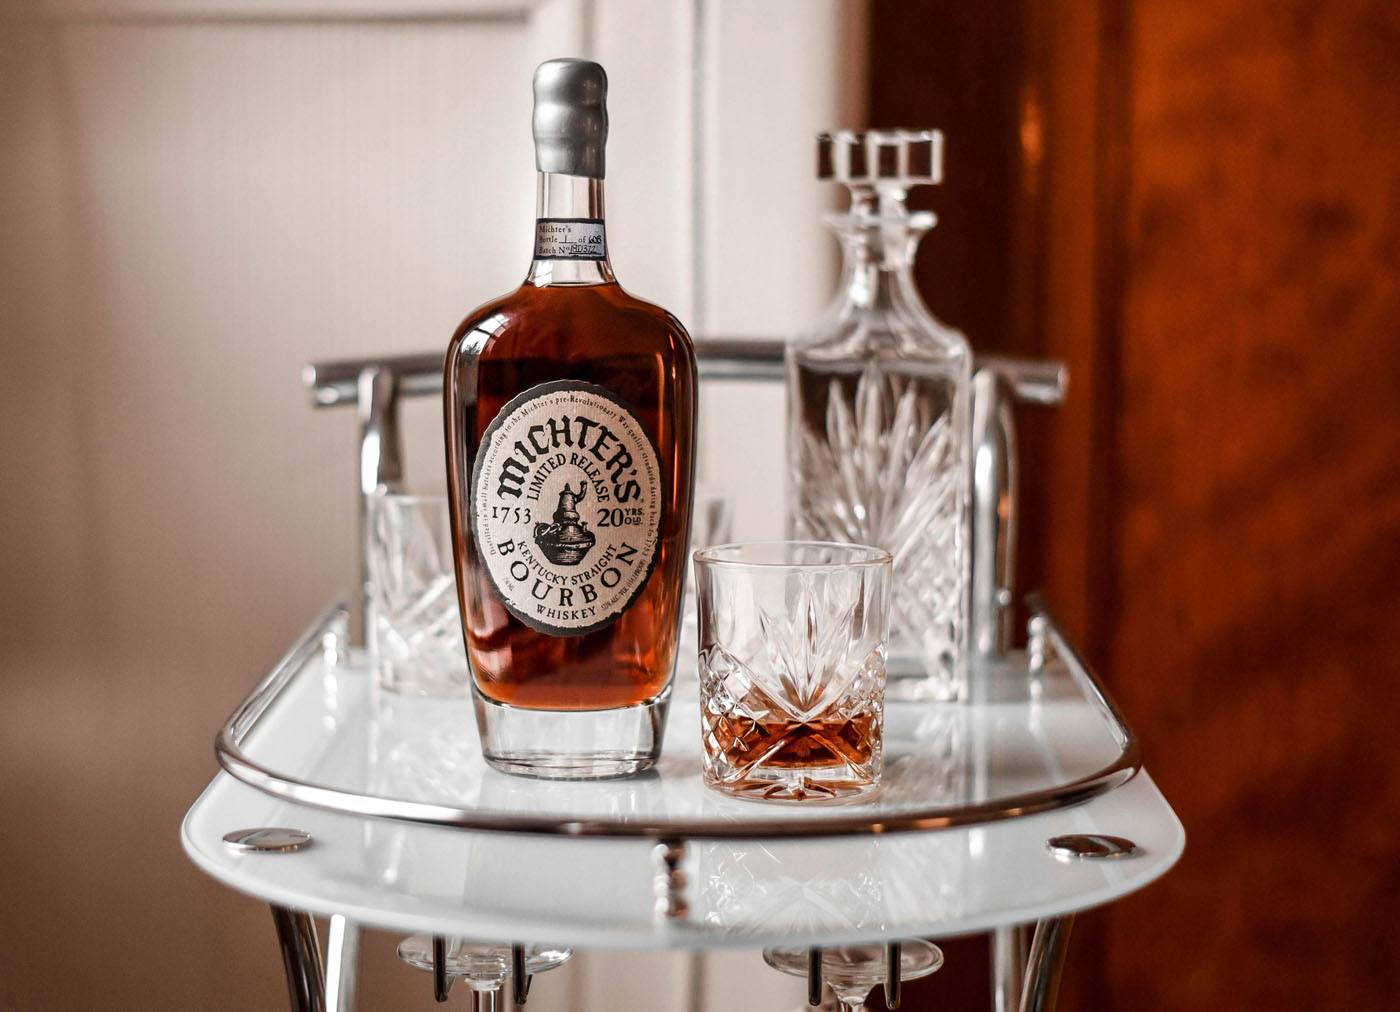 News: Michter’s füllt wieder 20-jährigen Bourbon Whiskey ab